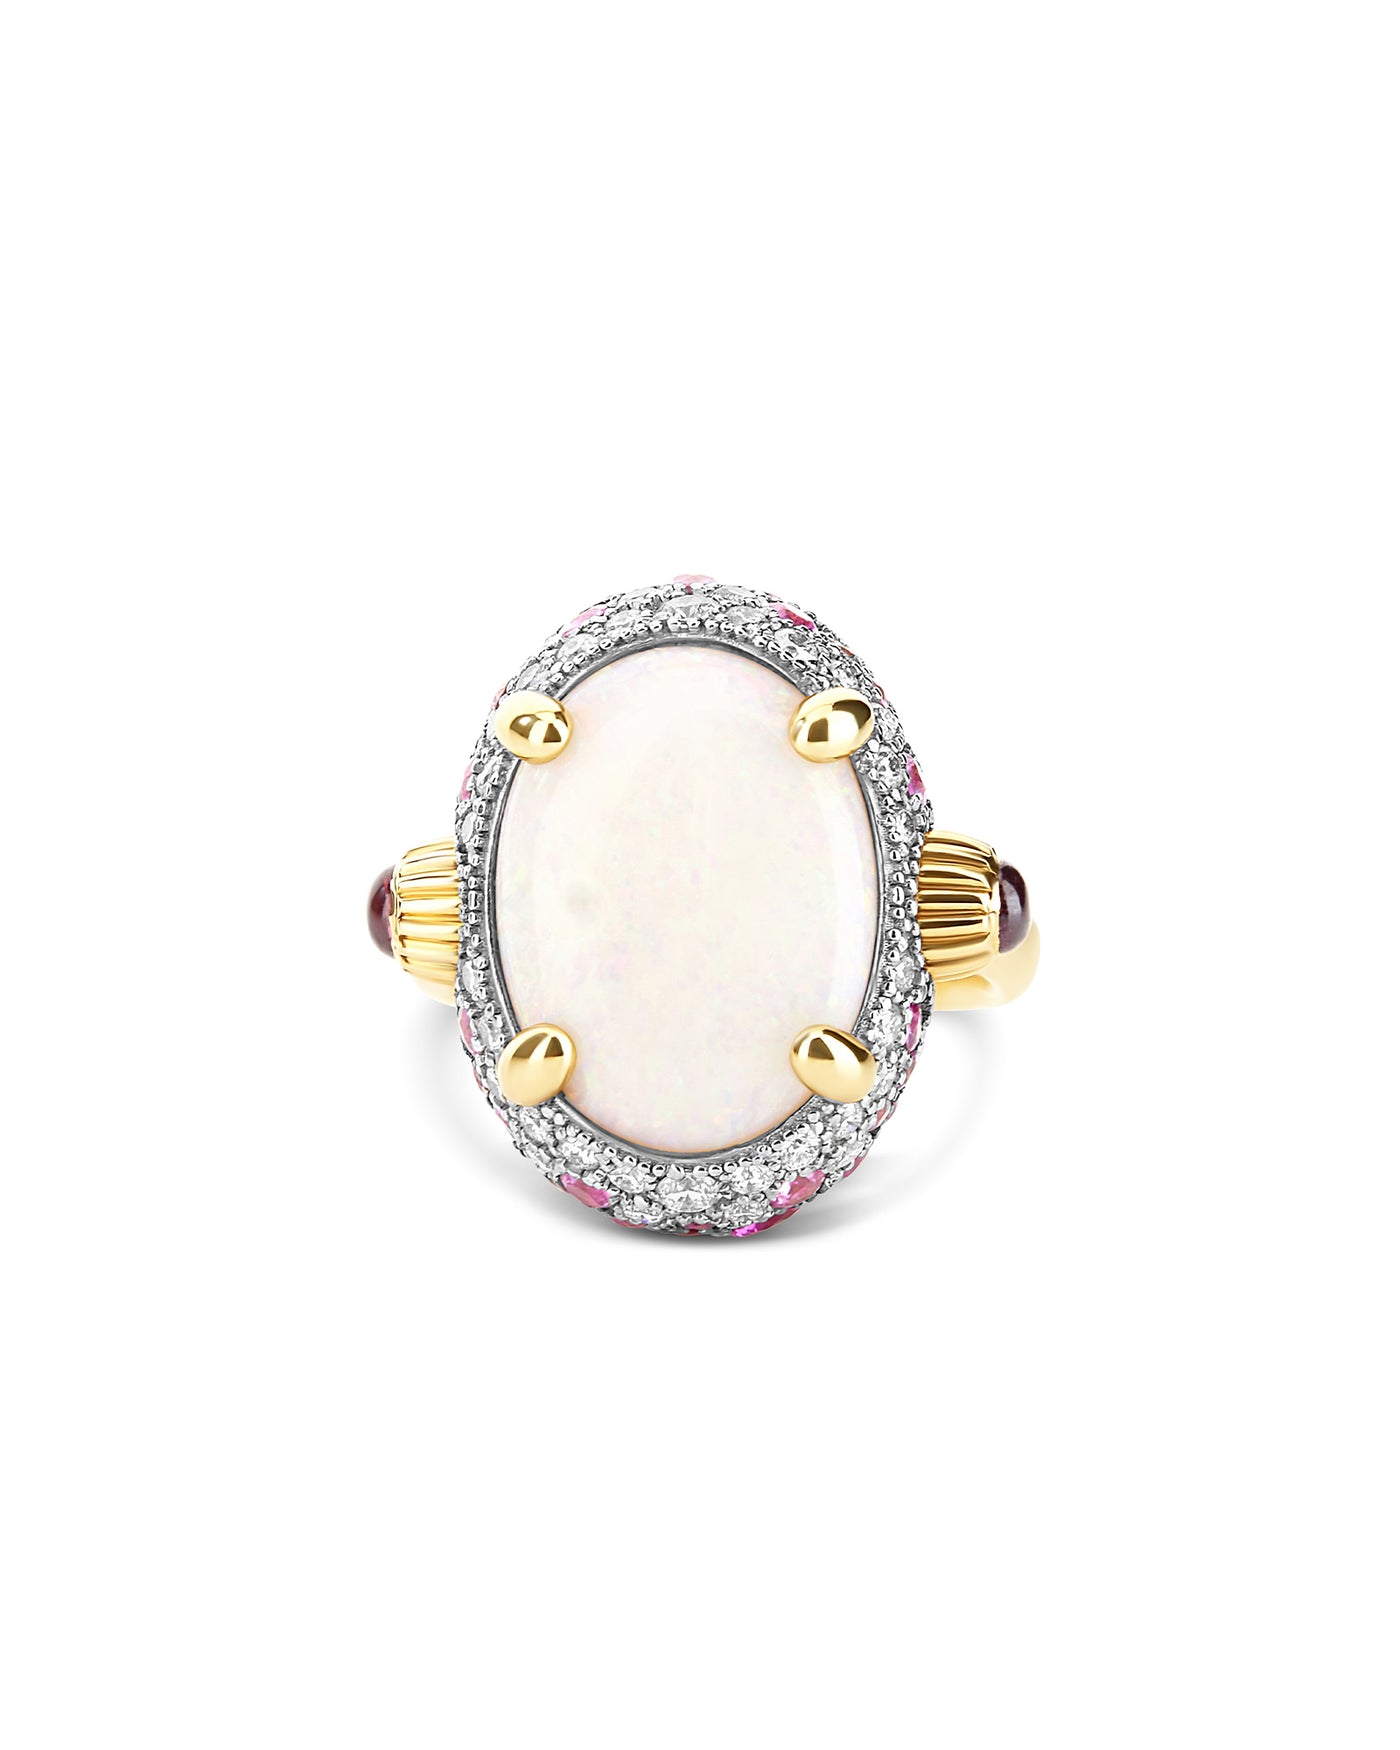 Anello "DANCING REVERSE" double face in oro, zaffiri rosa, rubini, opale bianco Australiano e diamanti (grande)